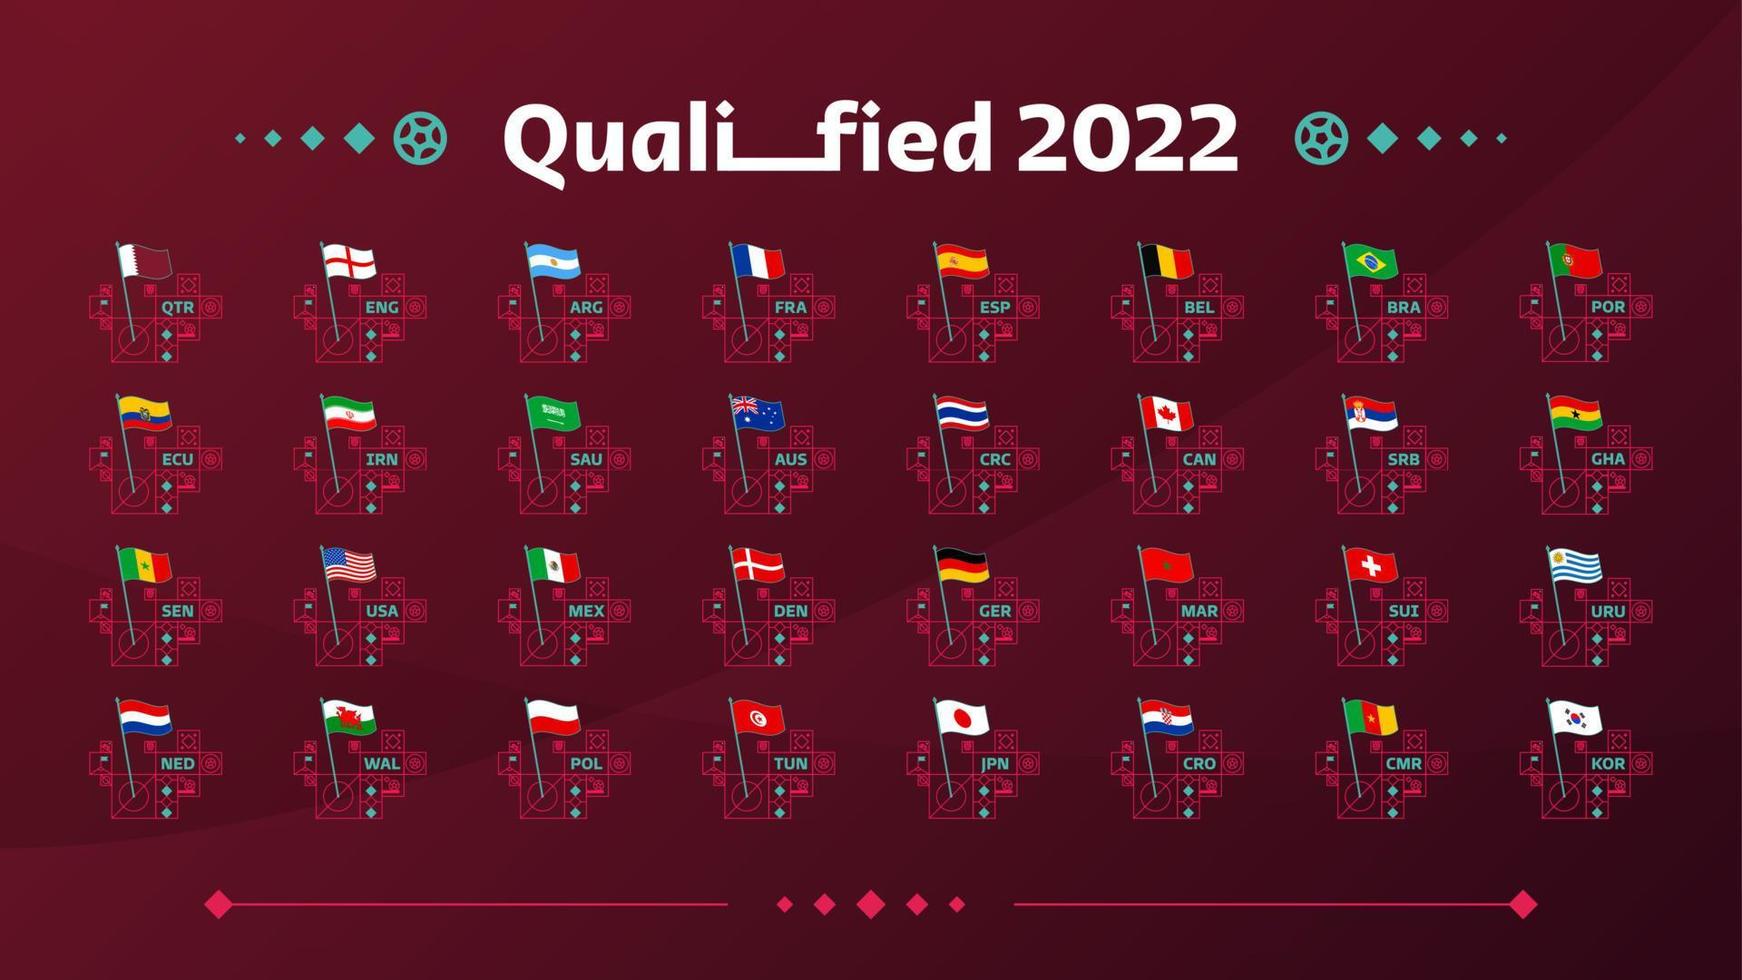 världsfotboll 2022 grupper och flaggor uppsättning. flaggorna för de länder som deltar i 2022 års världsmästerskap. vektor illustration